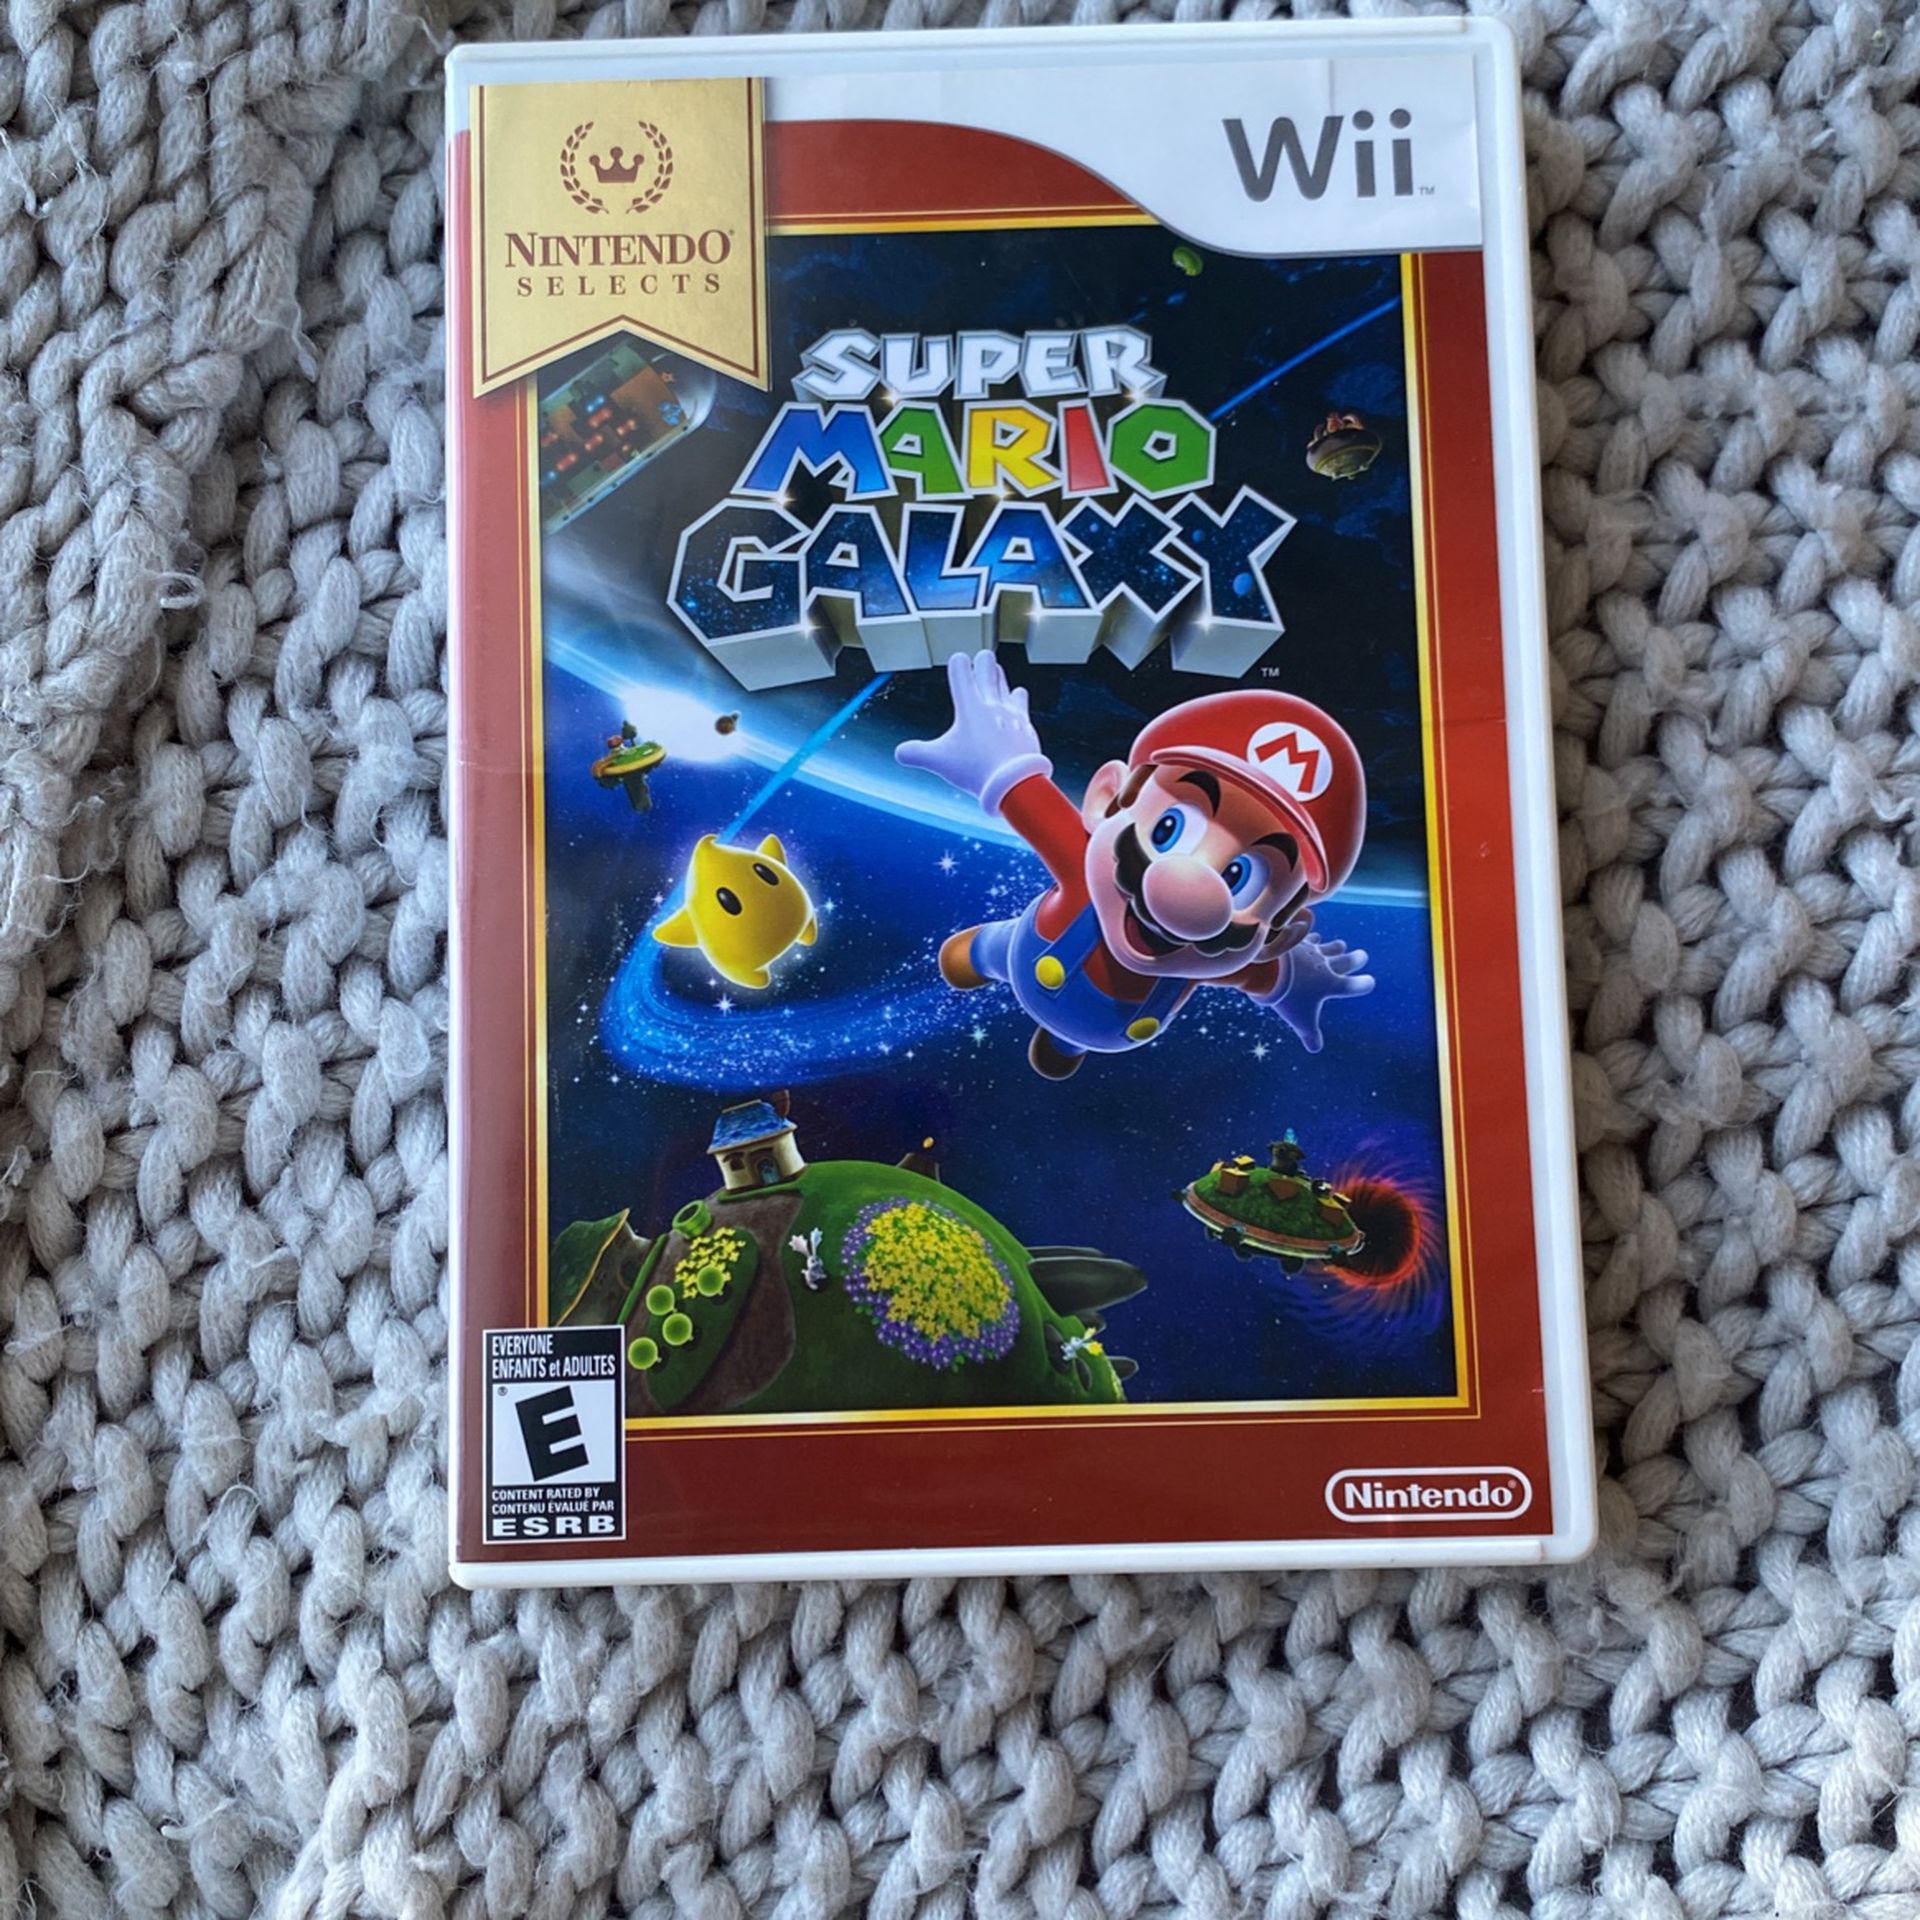 Wii Super Mario Galaxy